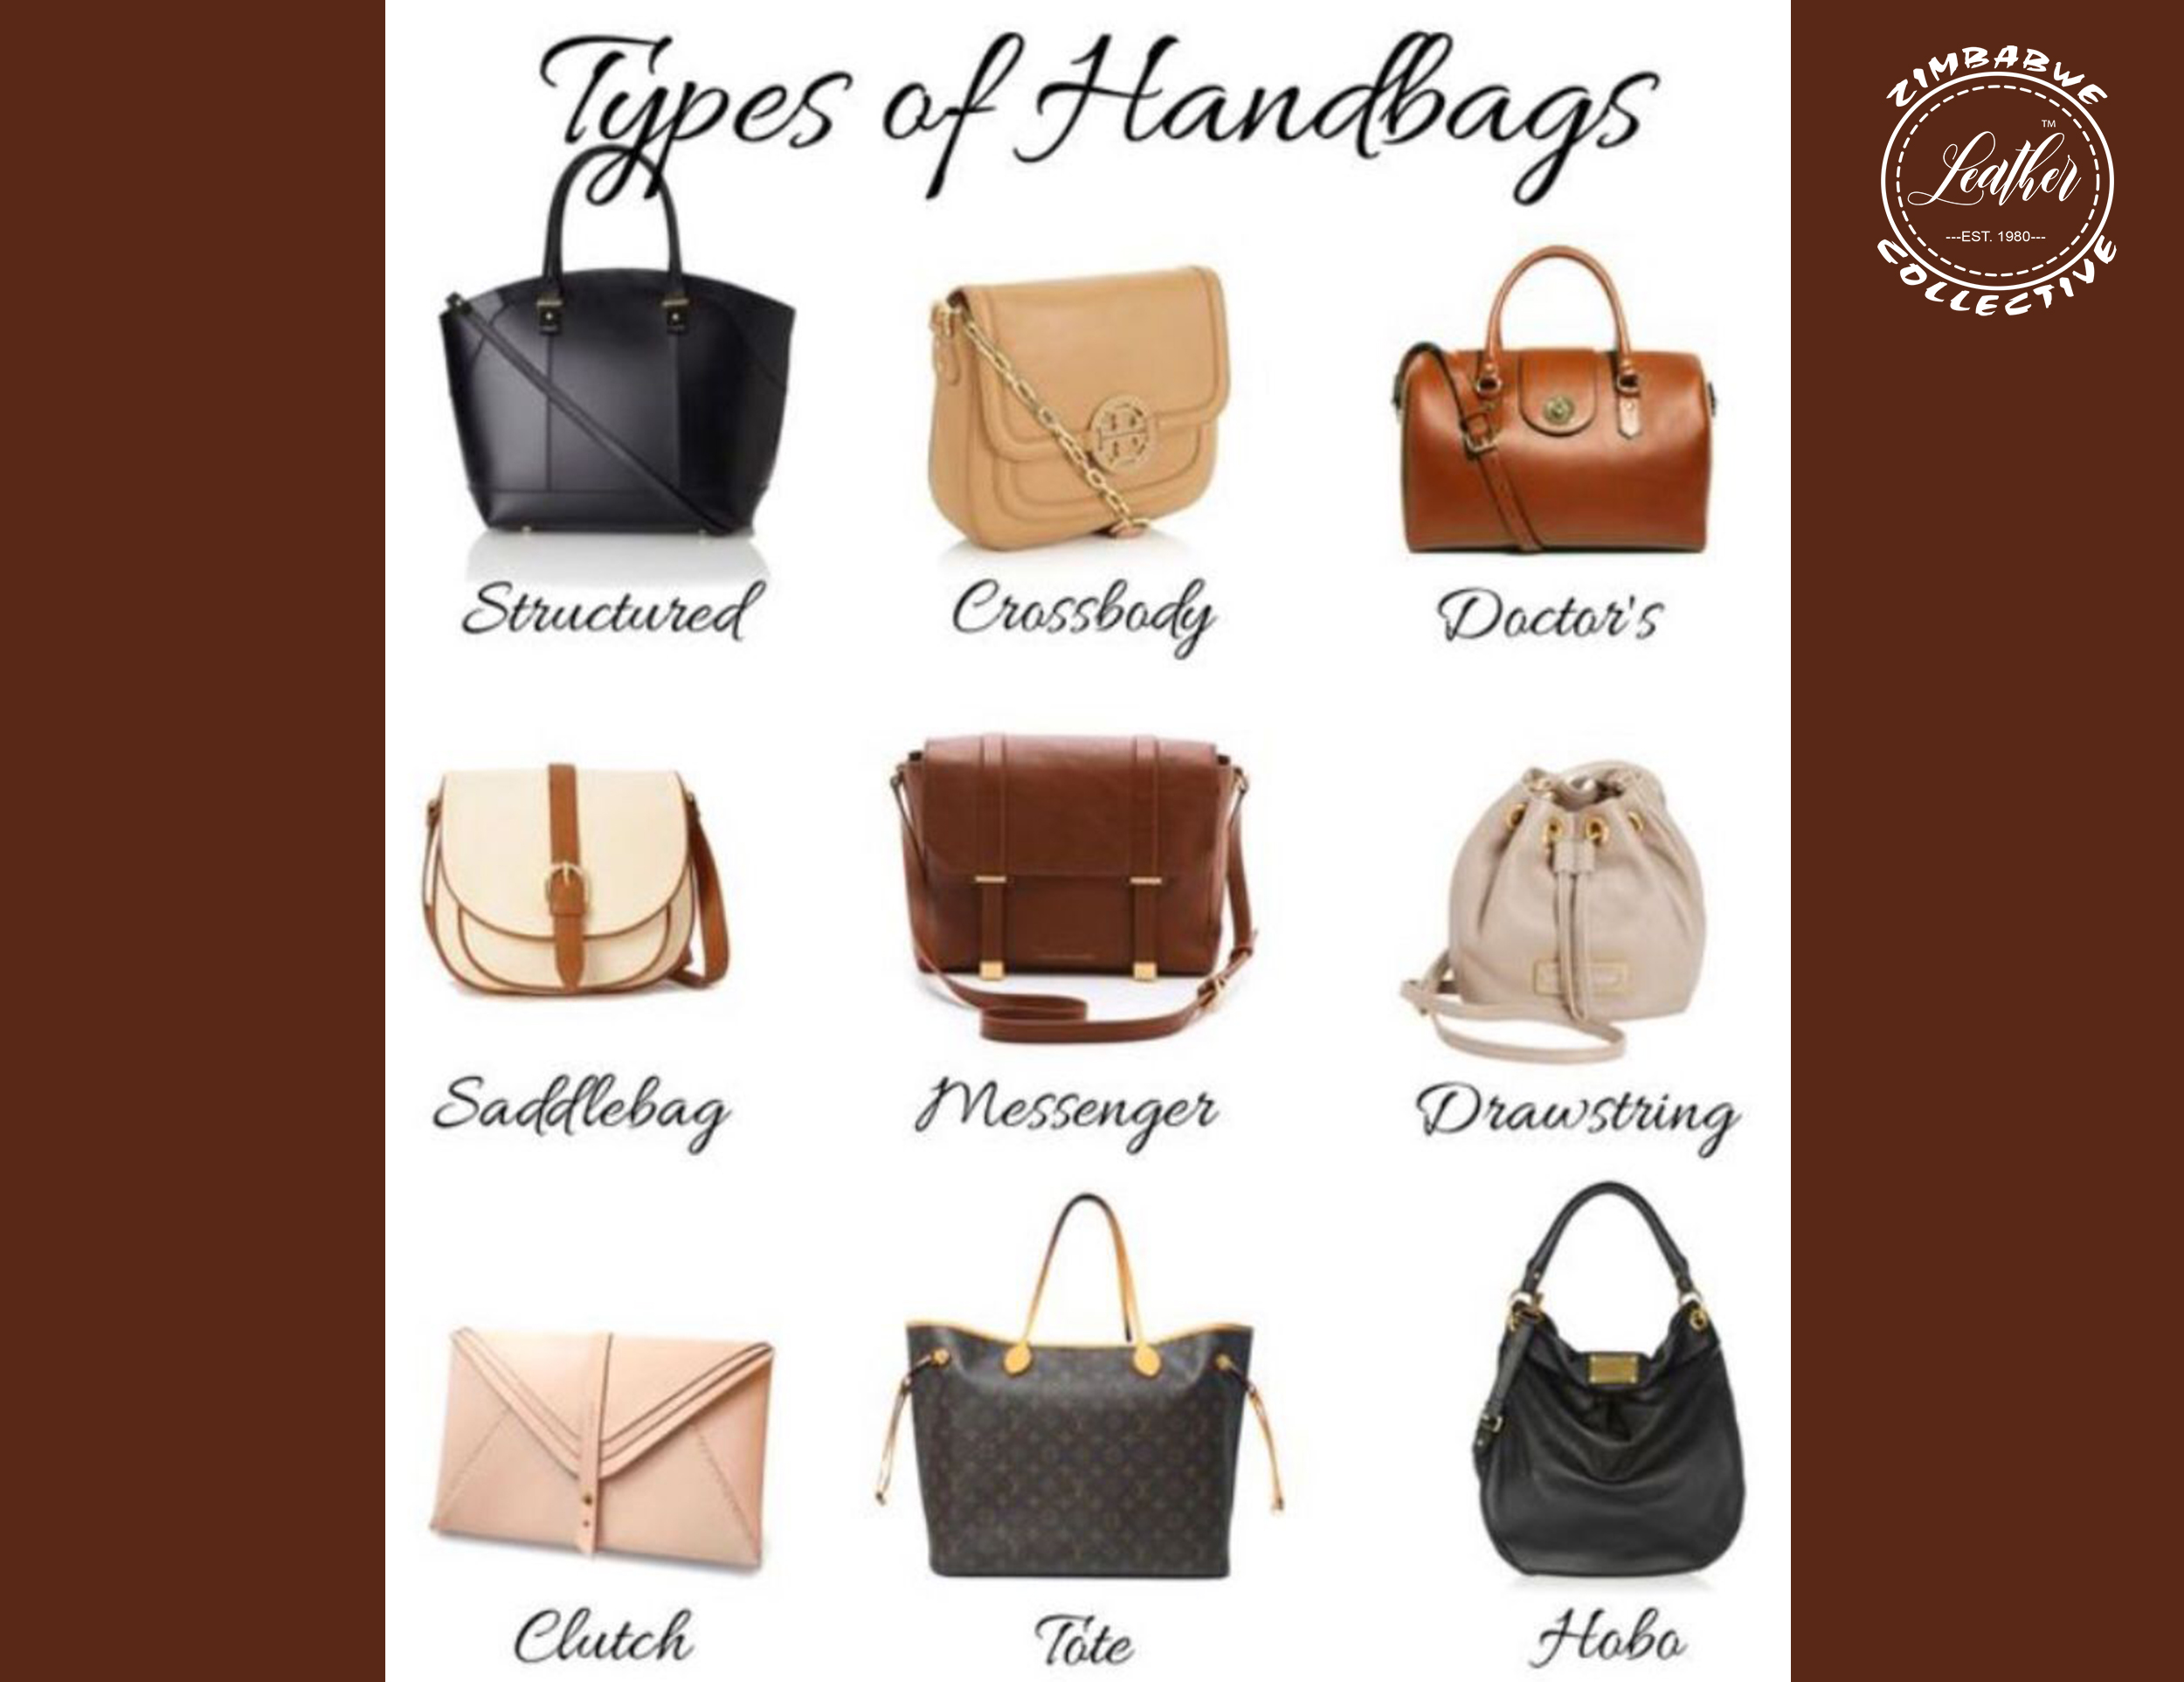 handbagsblogs